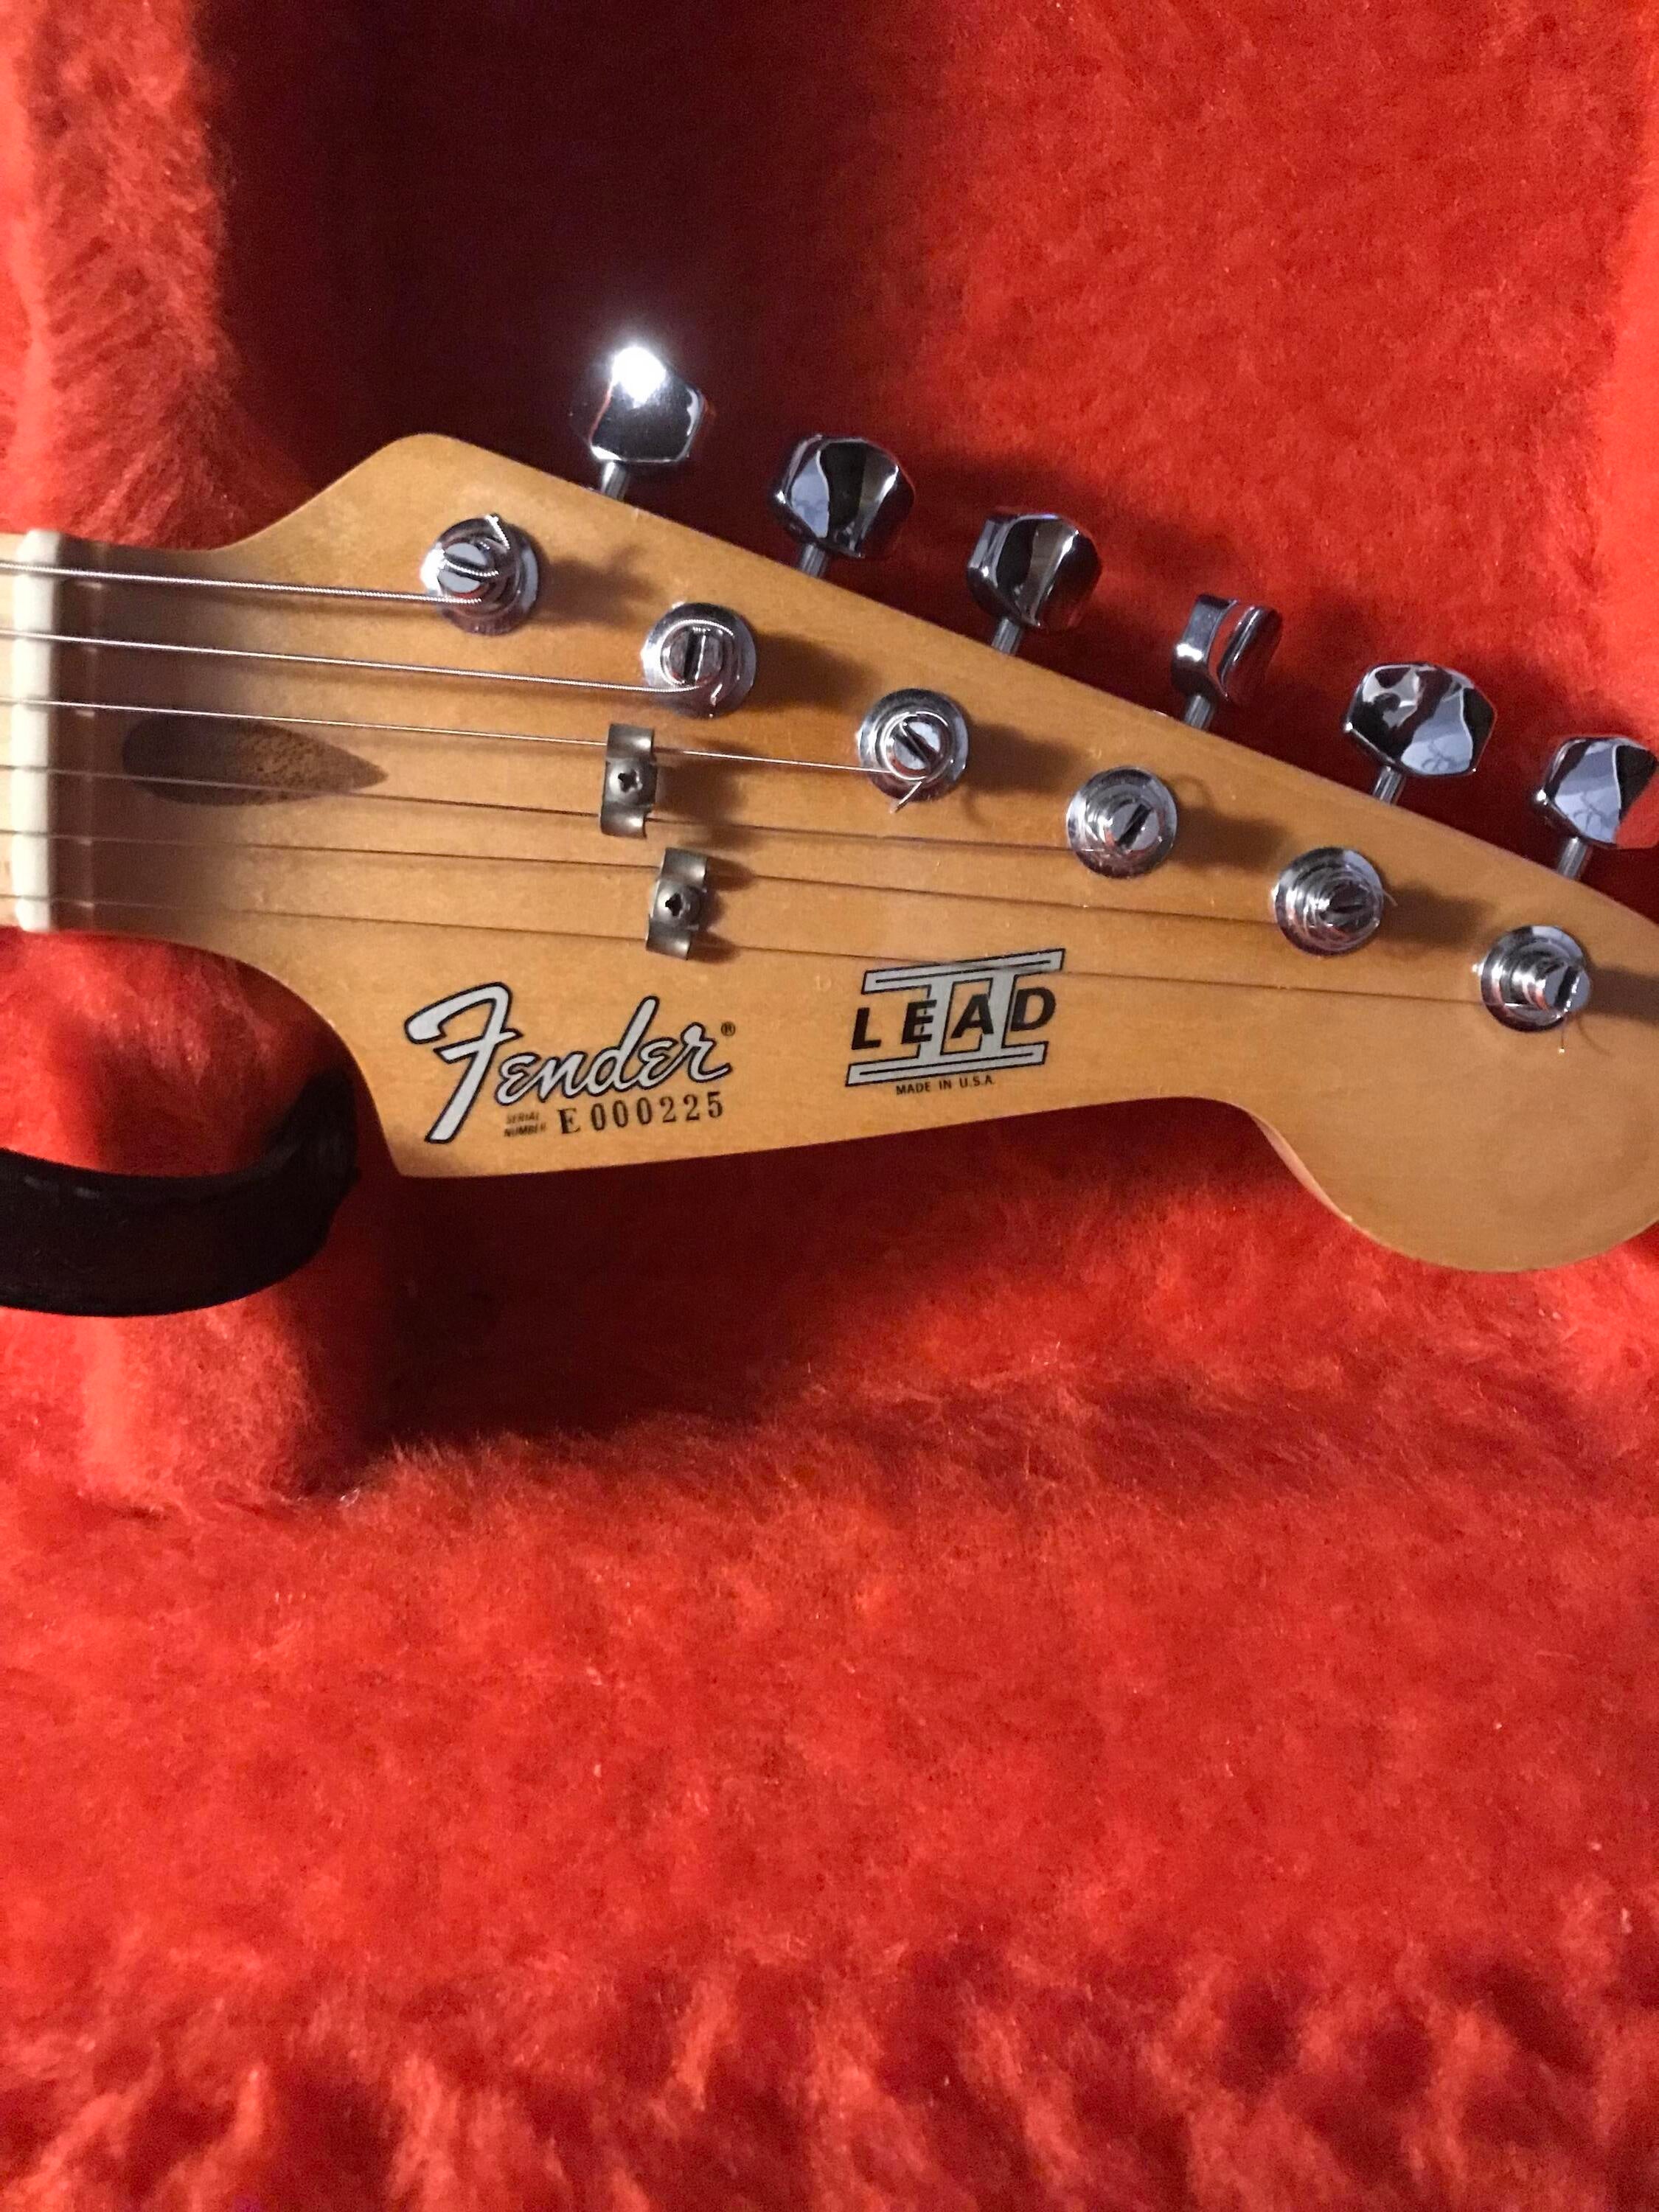 【爆買い豊富な】1980 Fender USA lead2 フェンダー リードⅡ セイモアダンカン フェンダー